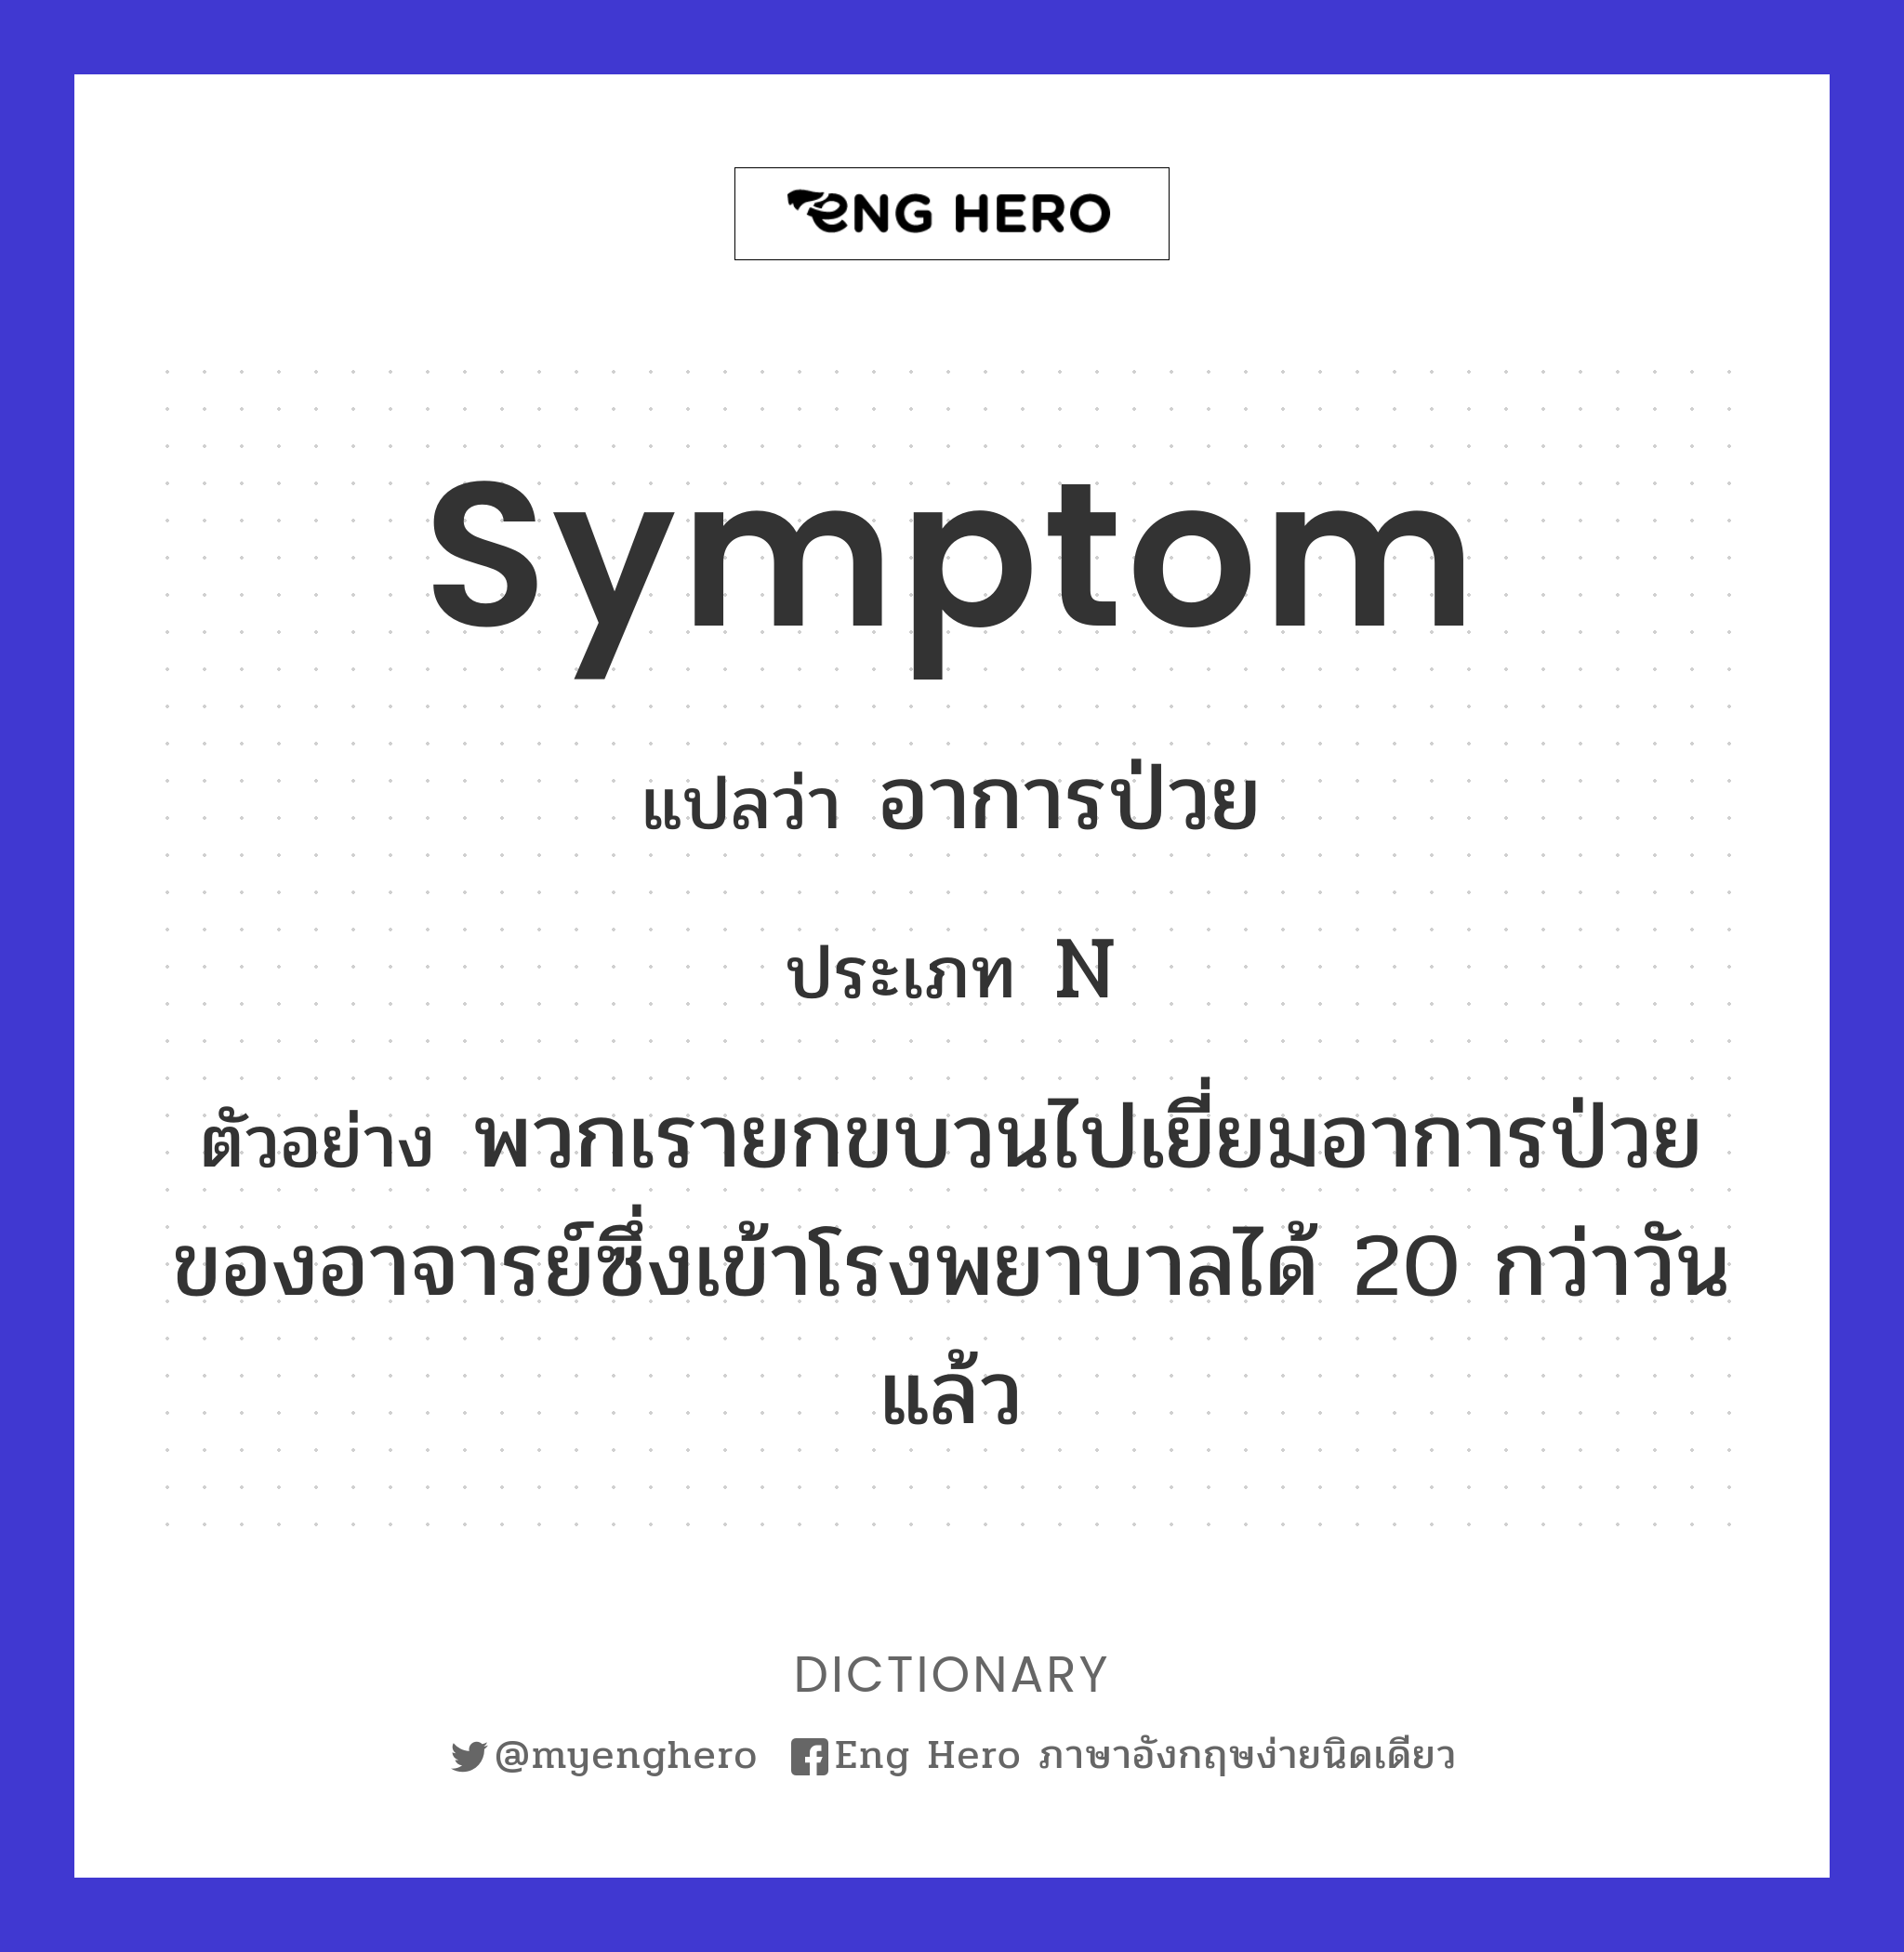 symptom